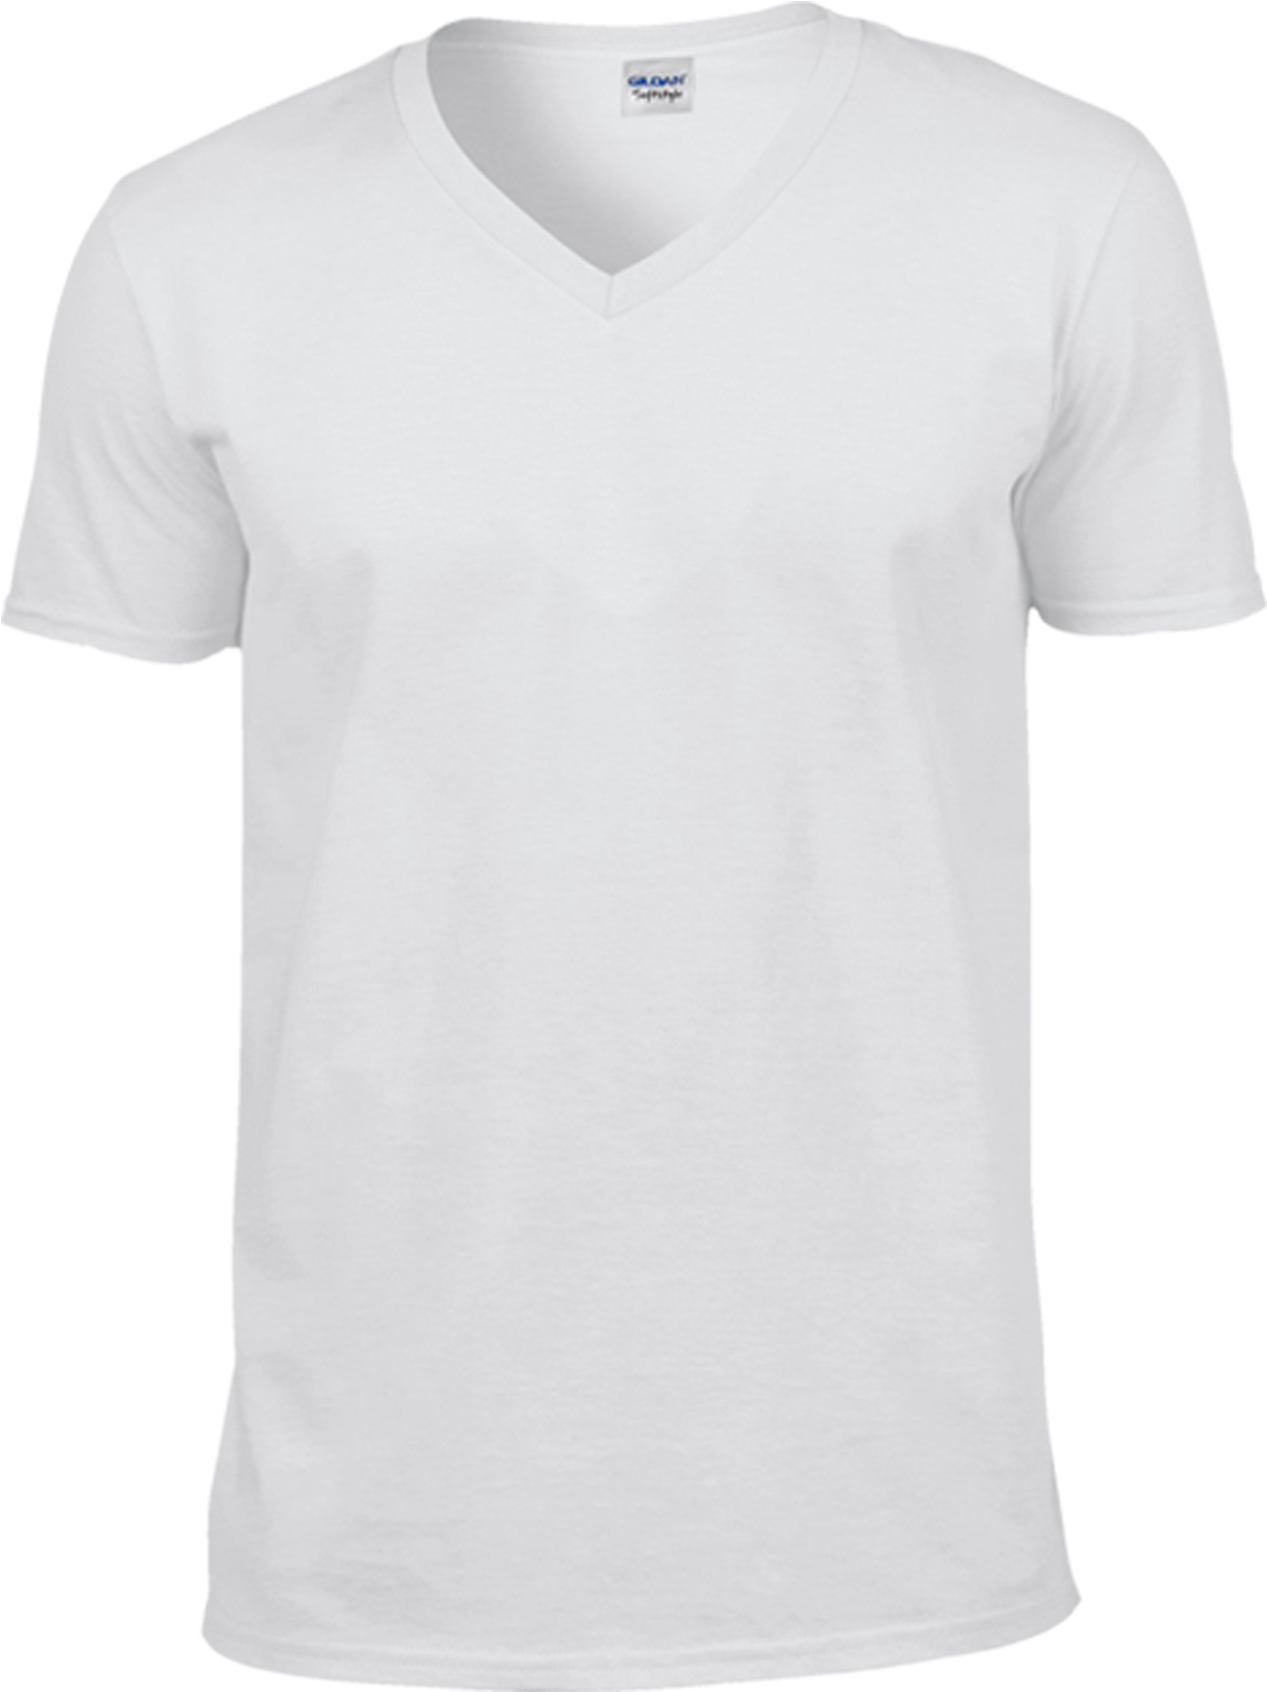 V-Neck T-Shirt Transparent PNG